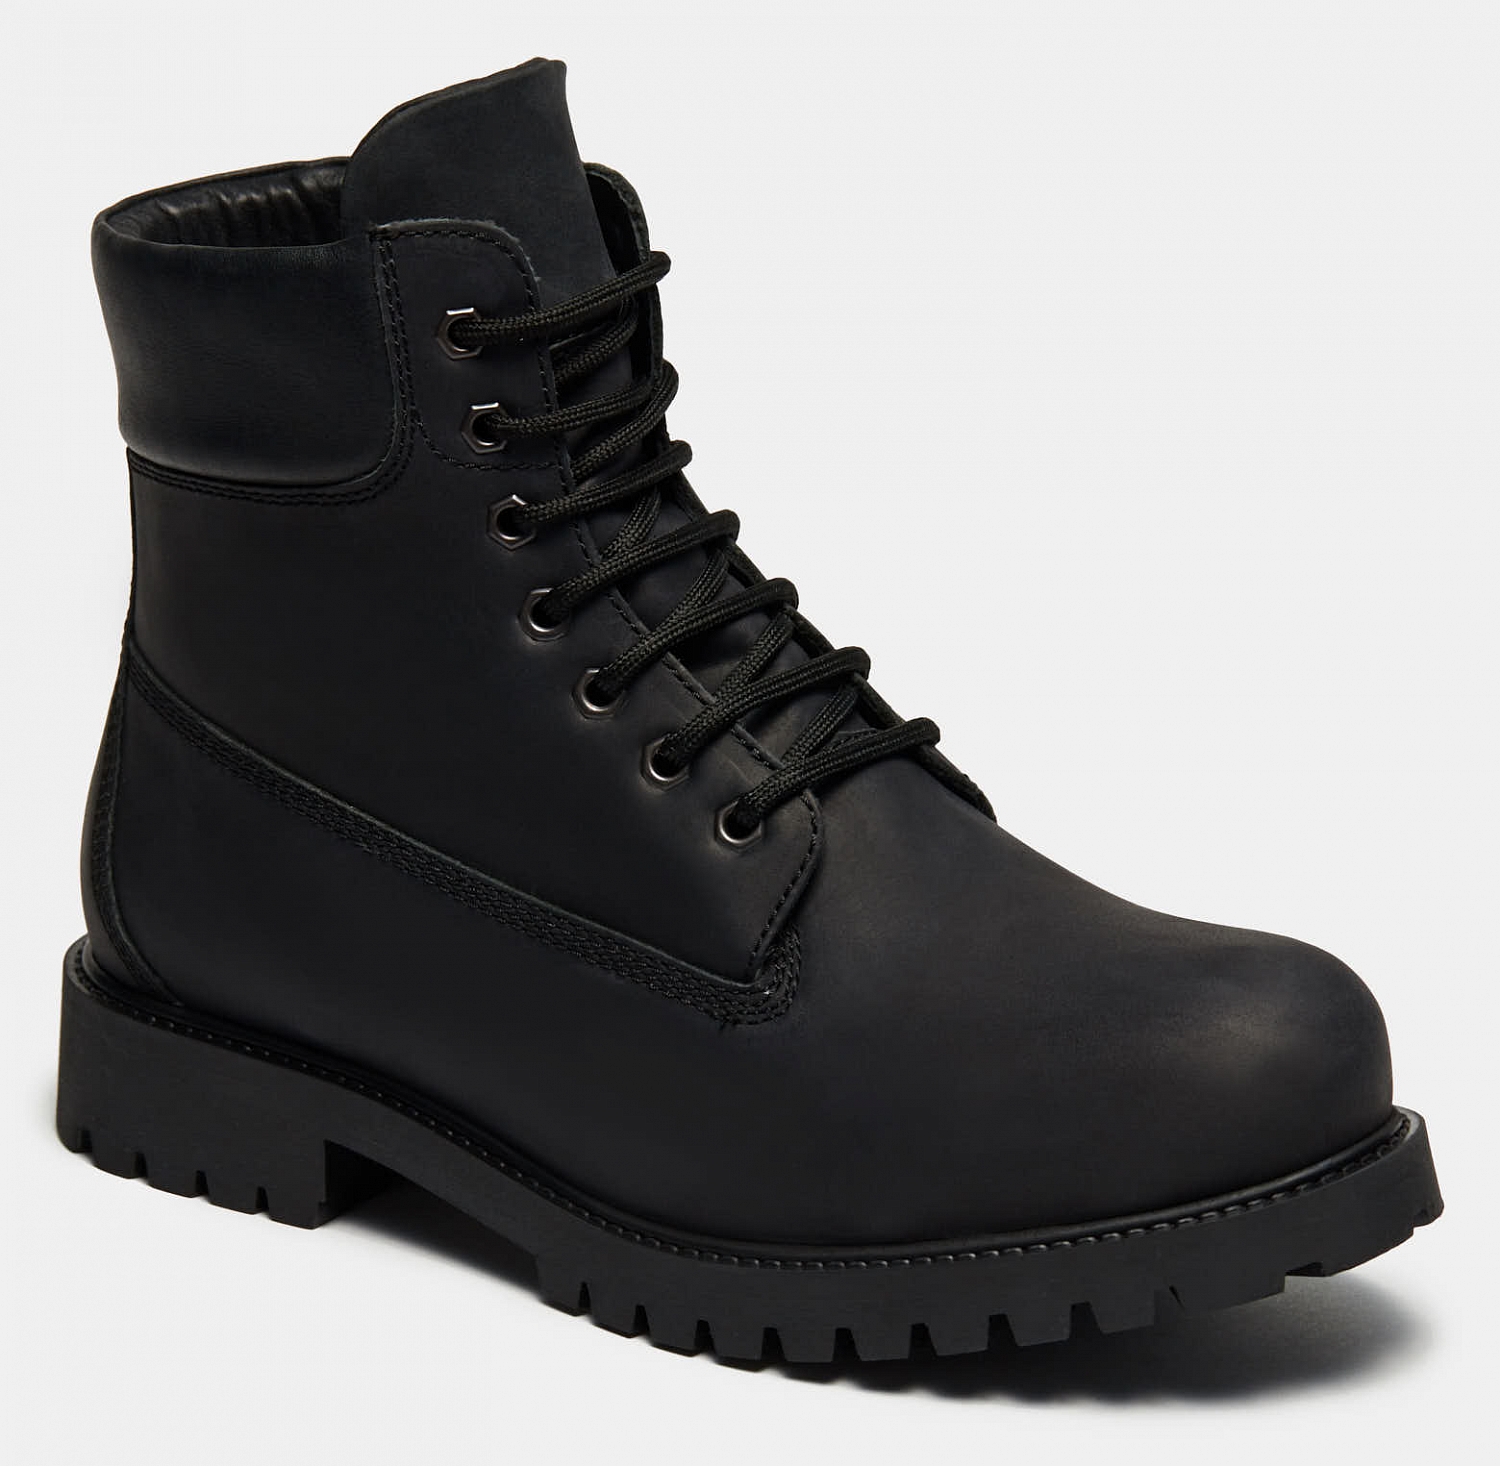 Ботинки мужские ASPEN (цвет черный, натуральная кожа) — купить по цене10560 р. в интернет-магазине RALF RINGER